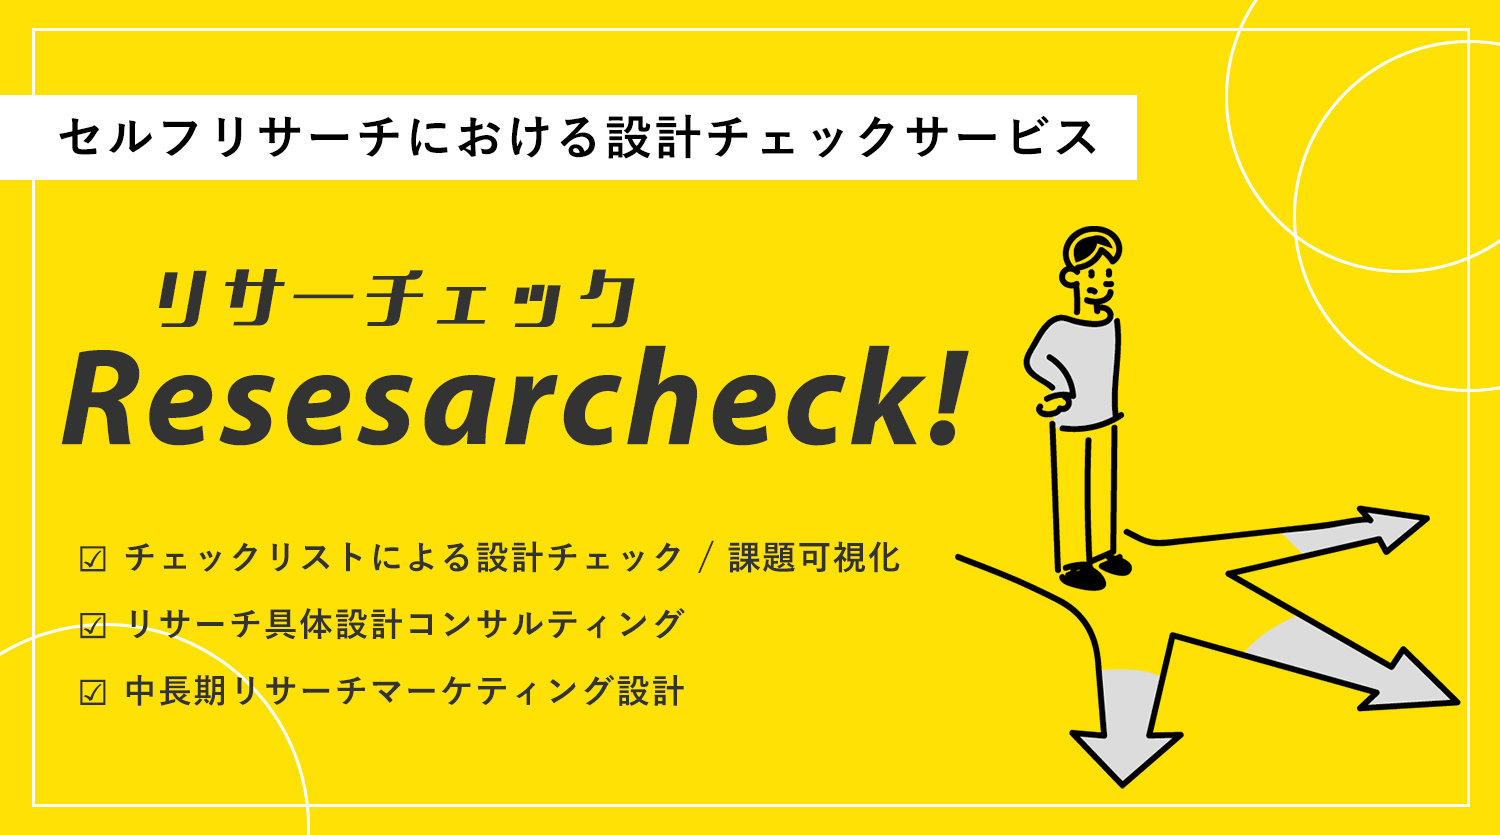 リサーチ設計の監査・診断サービス「ResearCheck」